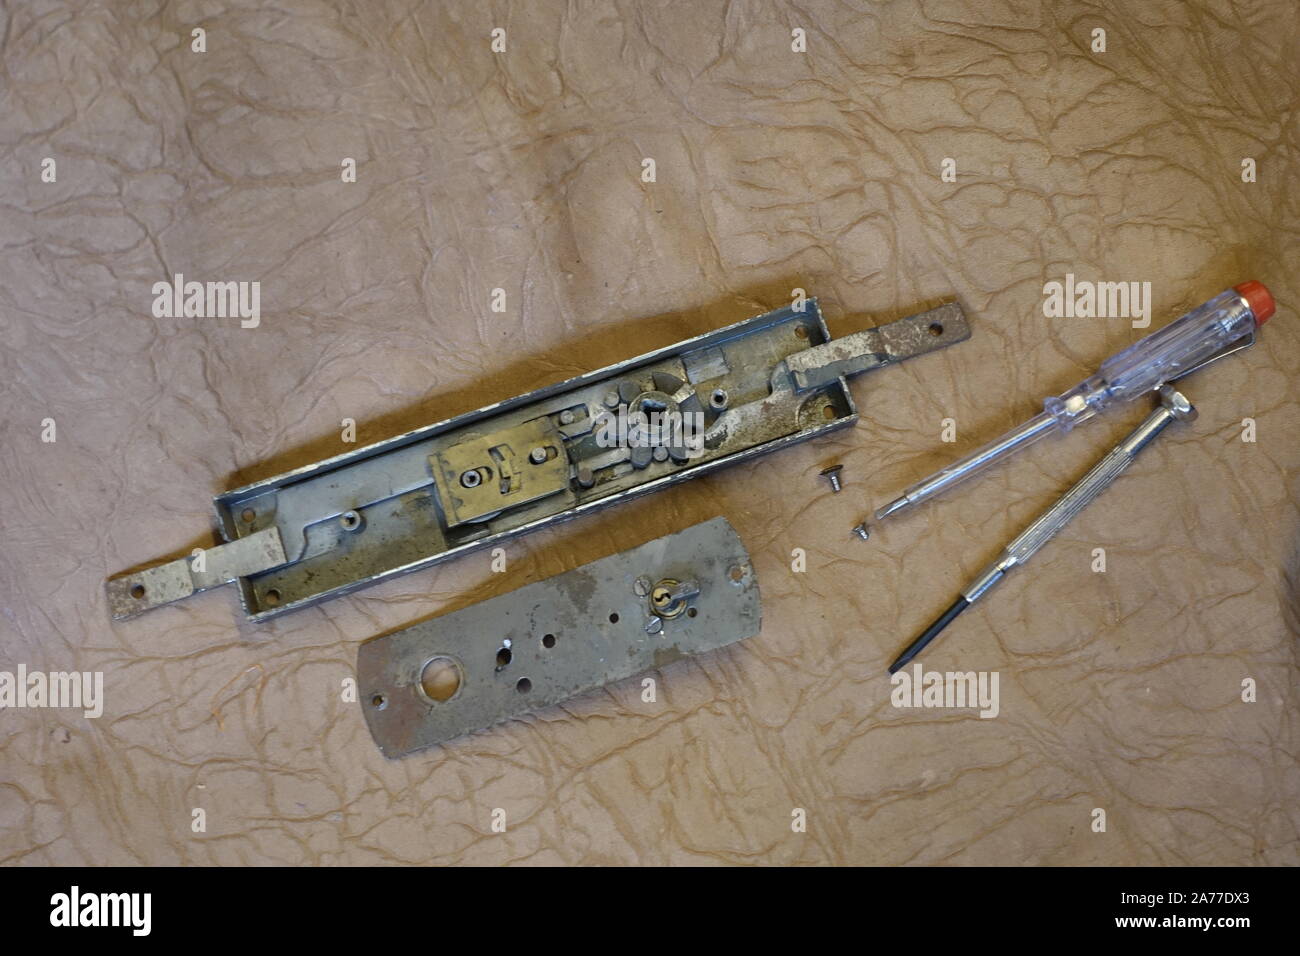 Keys in repair Workshop Stock Photo